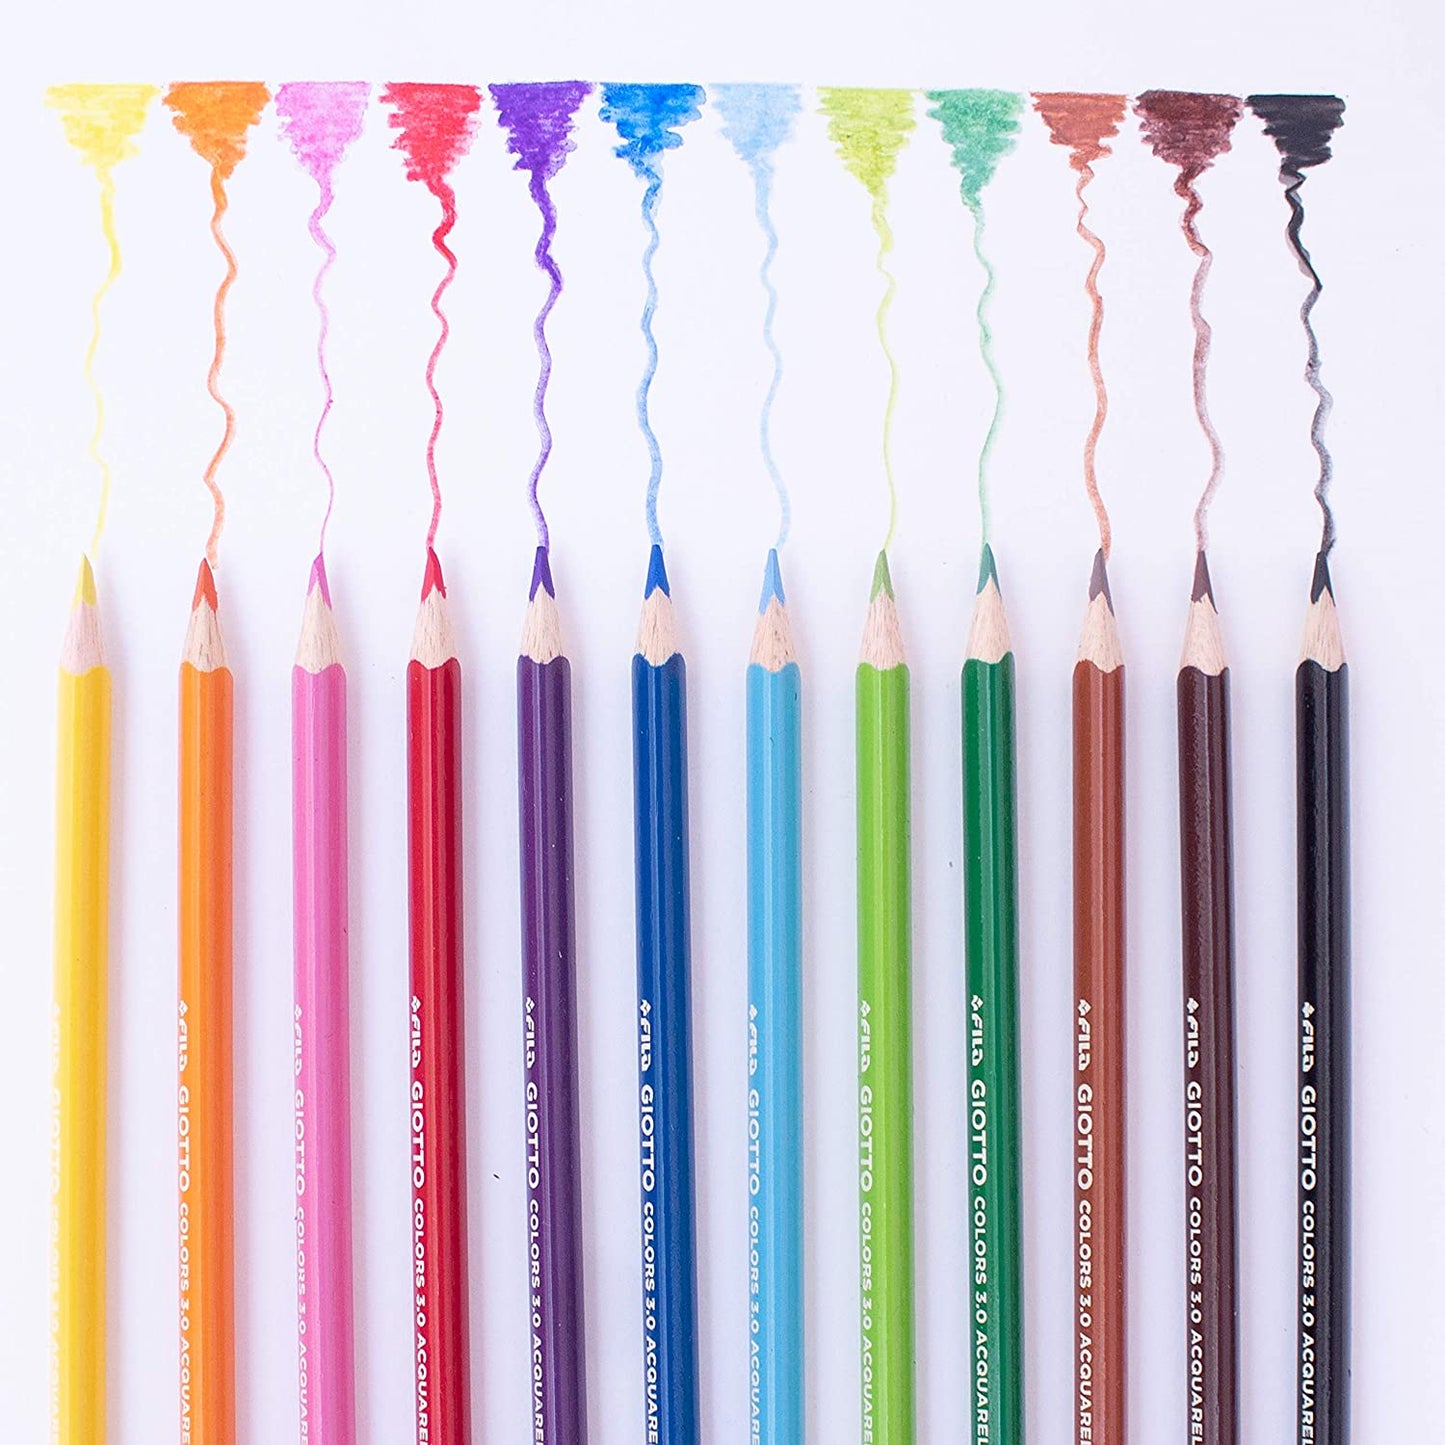 36 crayons de couleur Colors 3.0 Aquarell-Giotto-Super Châtaigne-Matériel : Product type